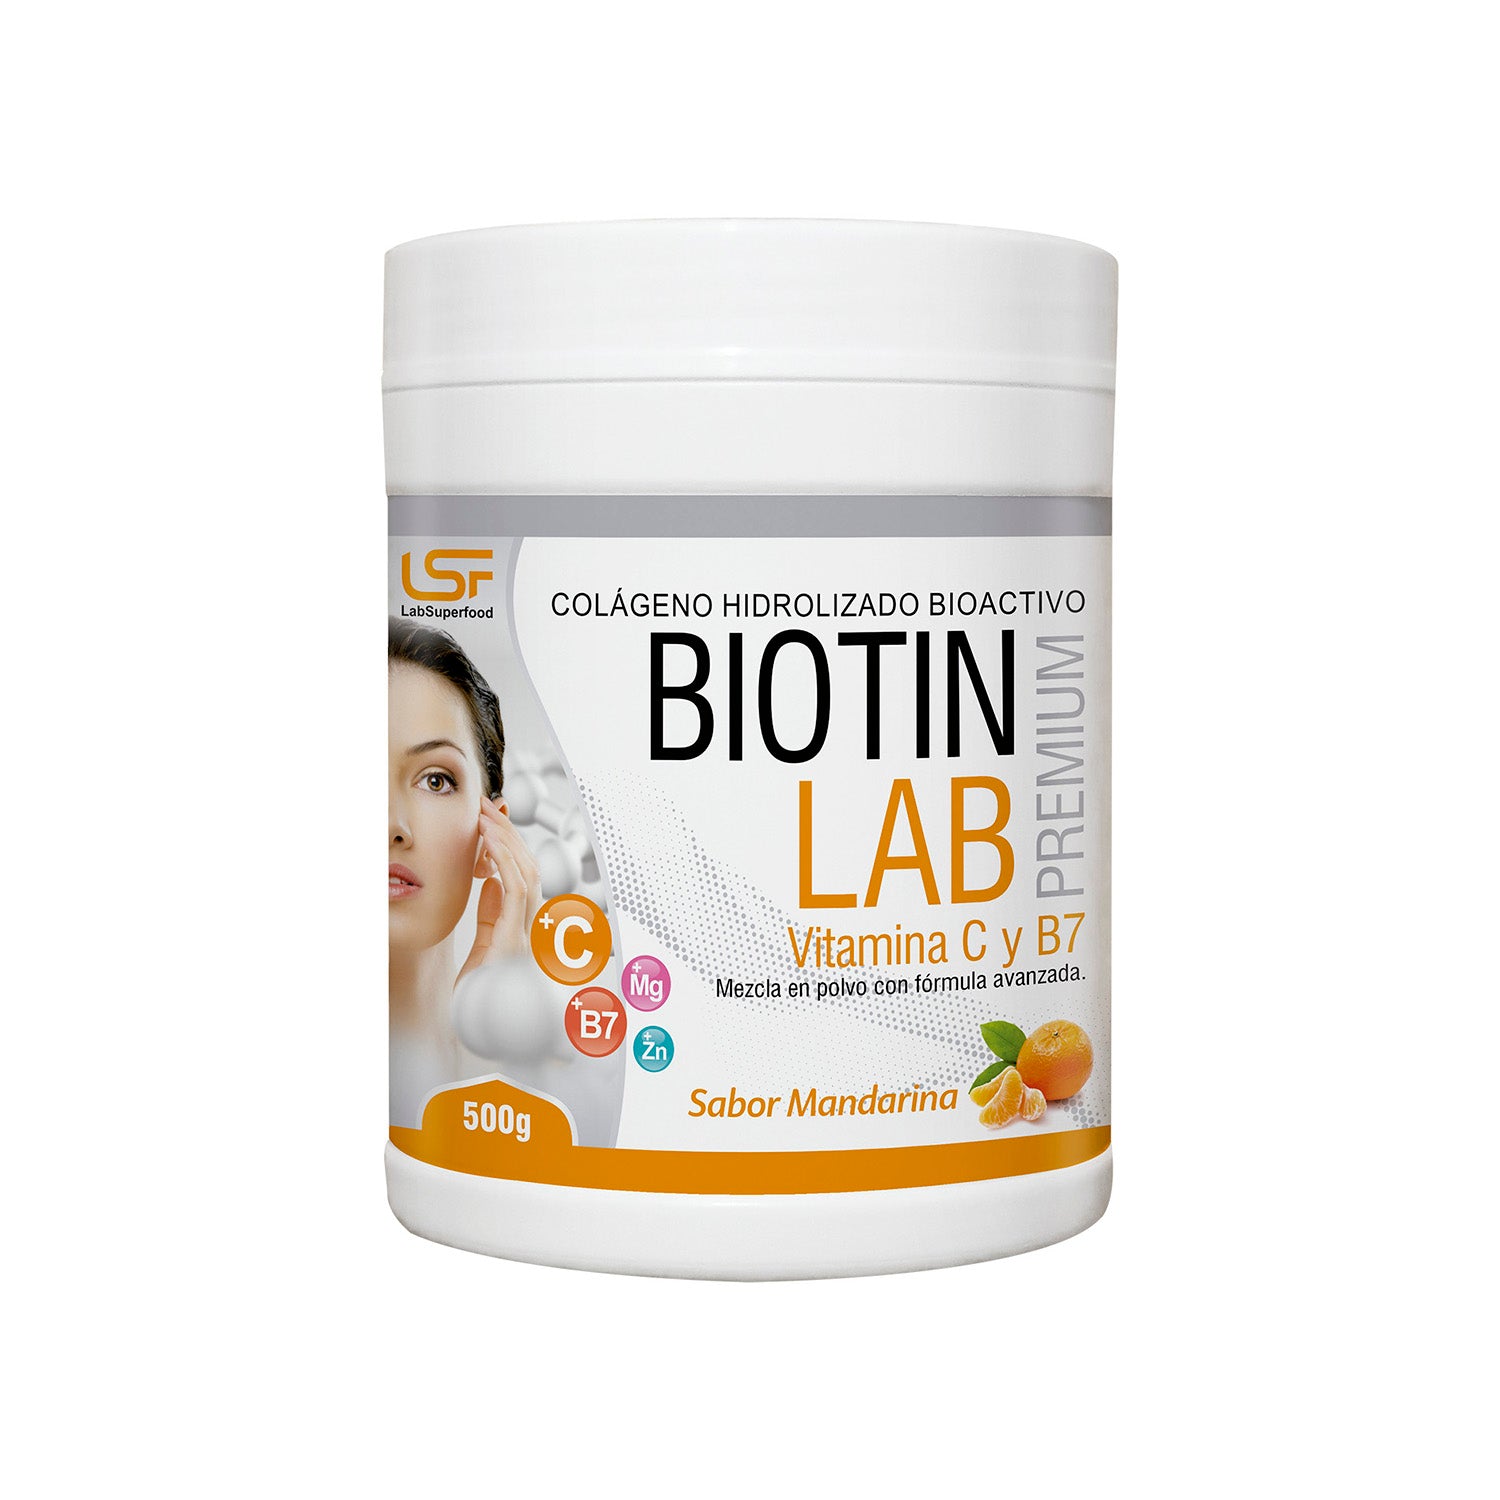 Collagen with Biotin - 500g